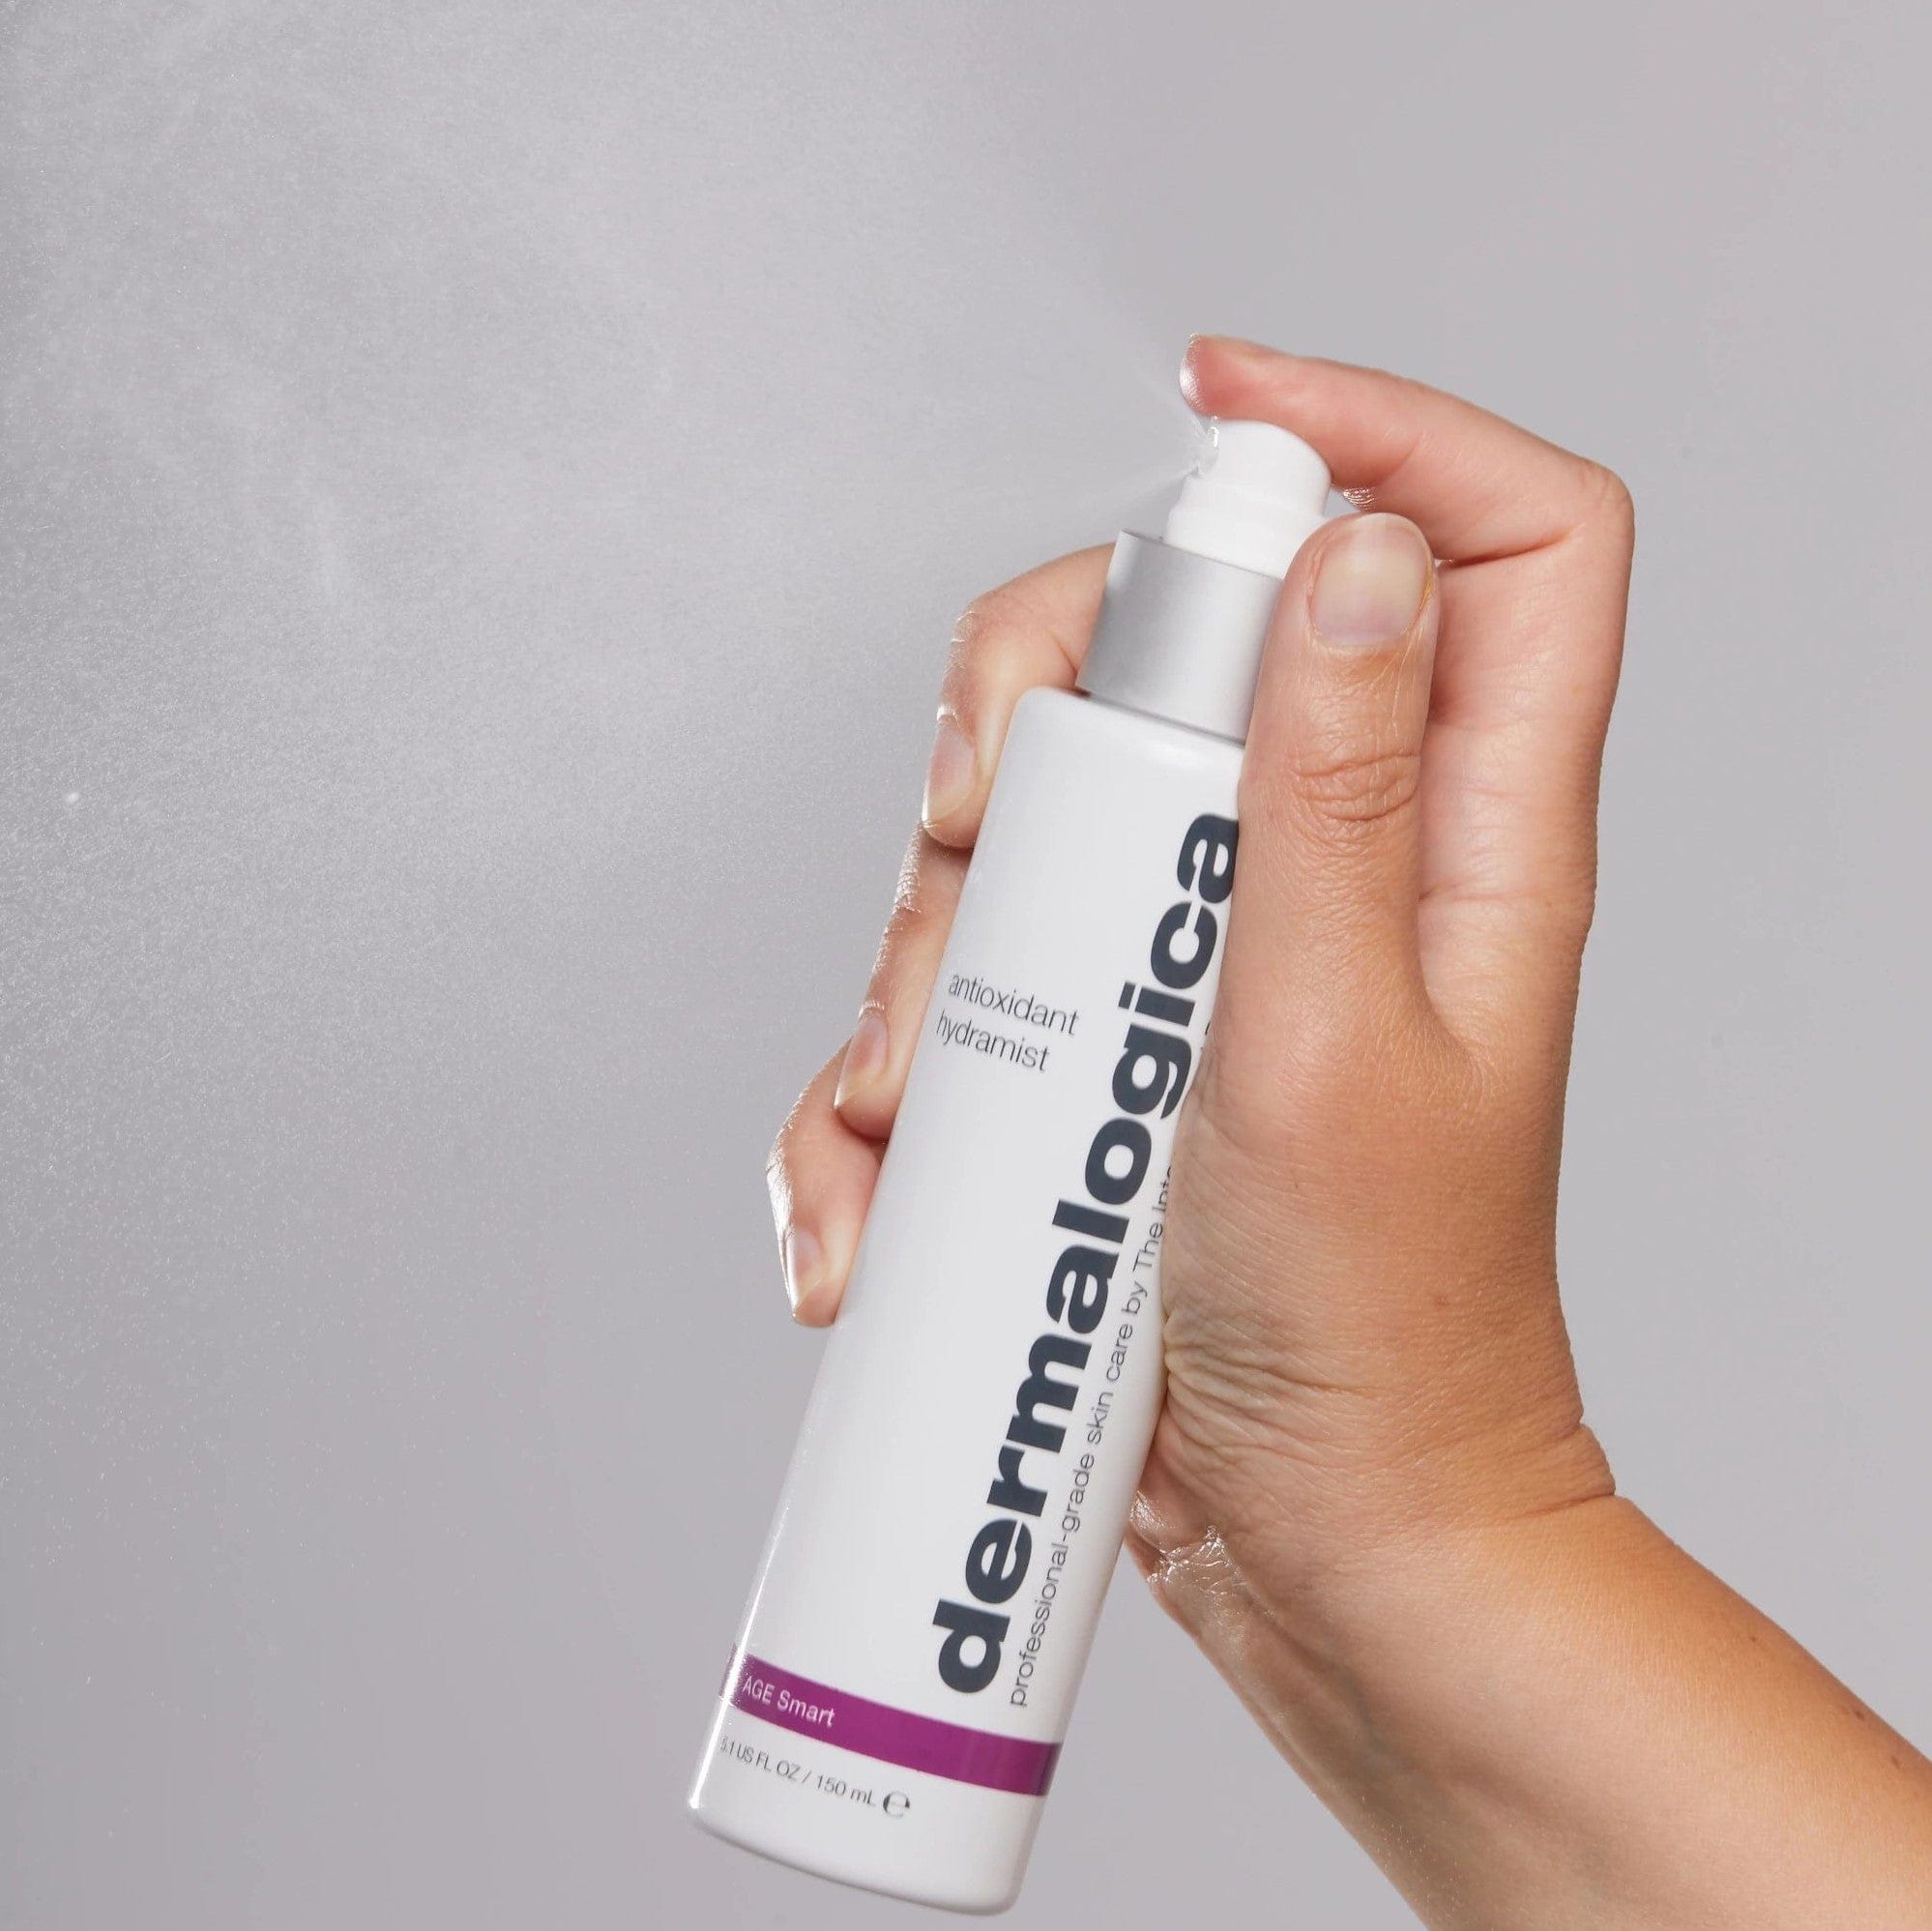 Eine Hand hält eine Flasche Antioxidant HydraMist | Gesichtsspray, ein antioxidatives Spray zur Bekämpfung vorzeitiger Hautveränderung.